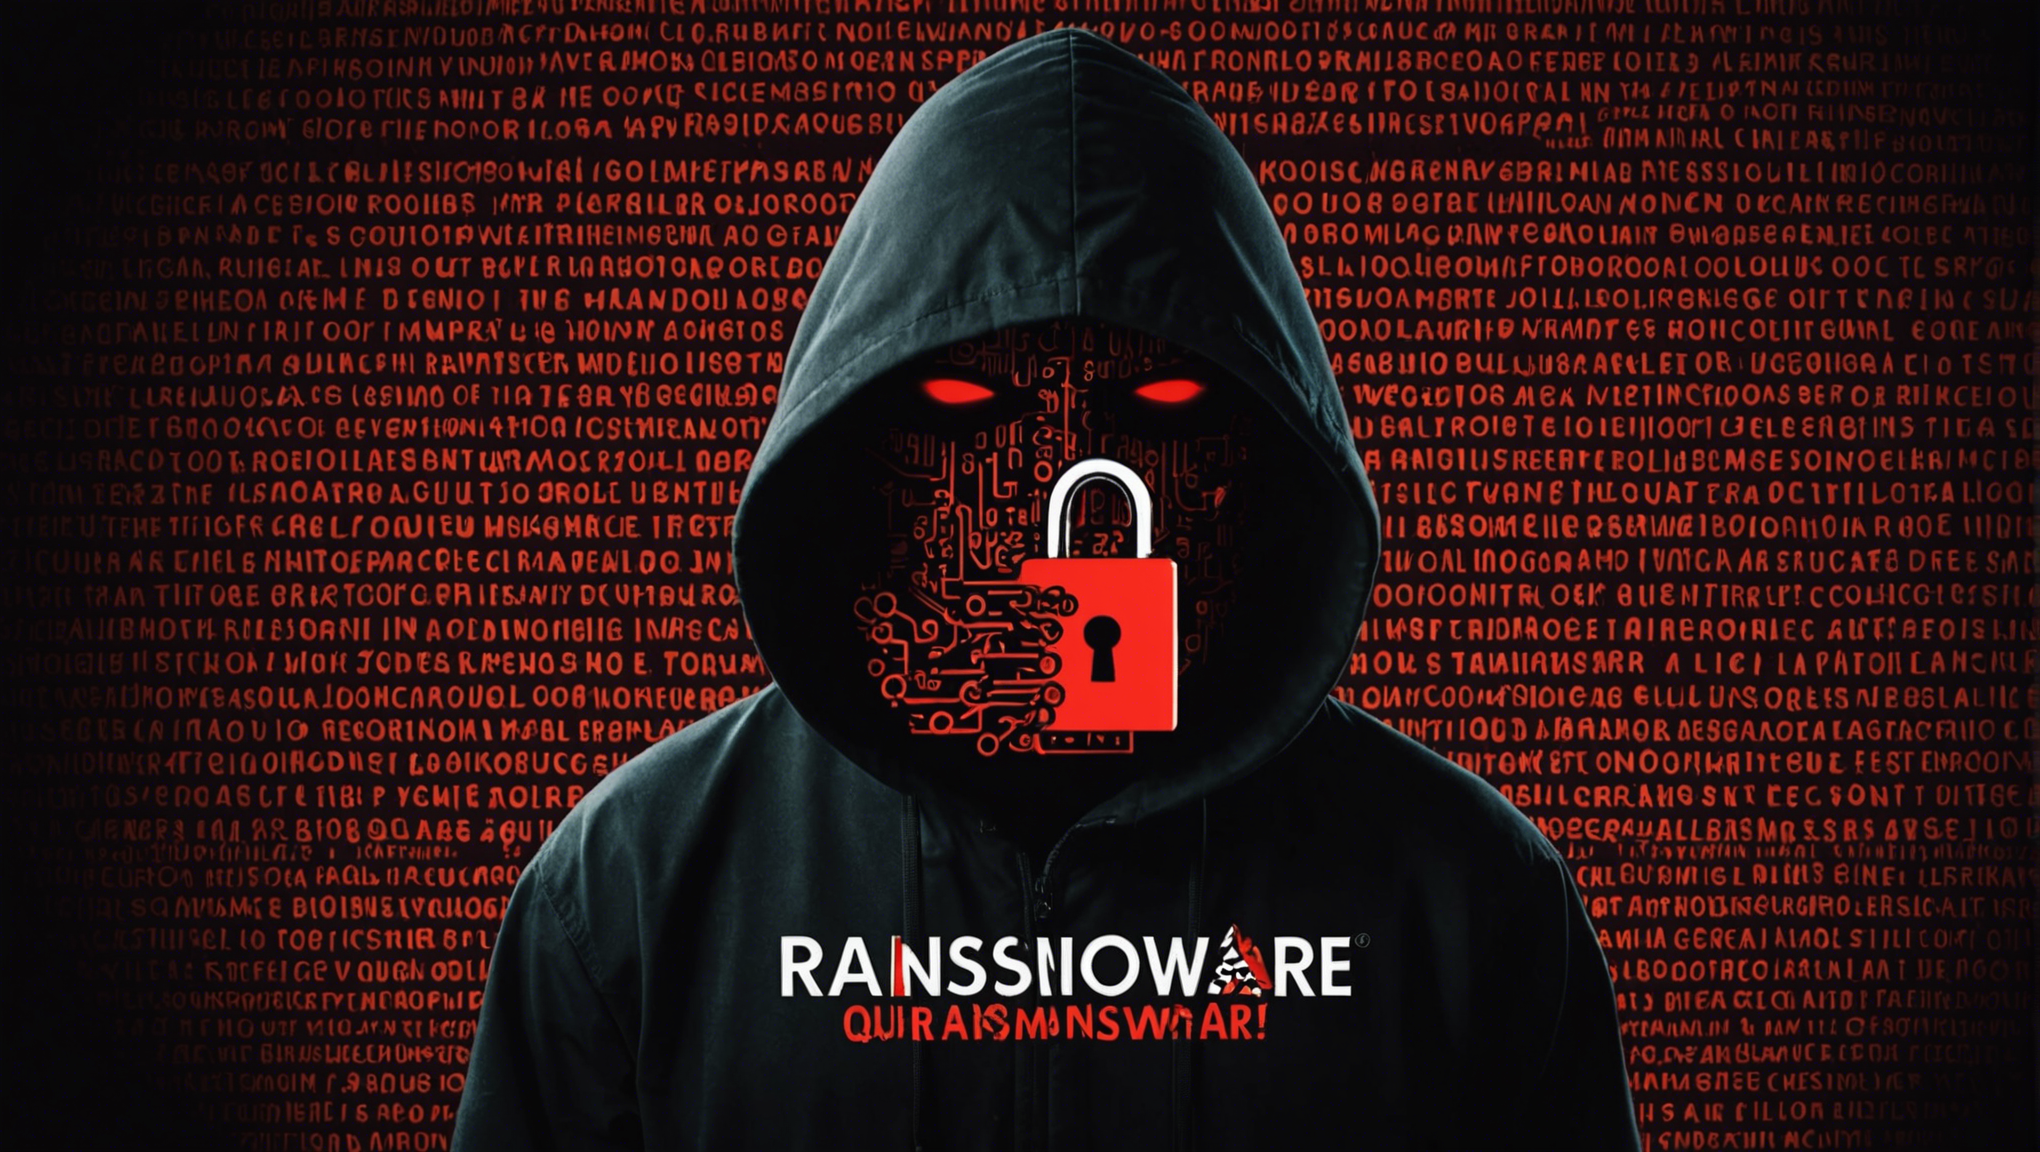 découvrez ce qu'est le ransomware et comment vous pouvez vous protéger contre ce type de menace en ligne.